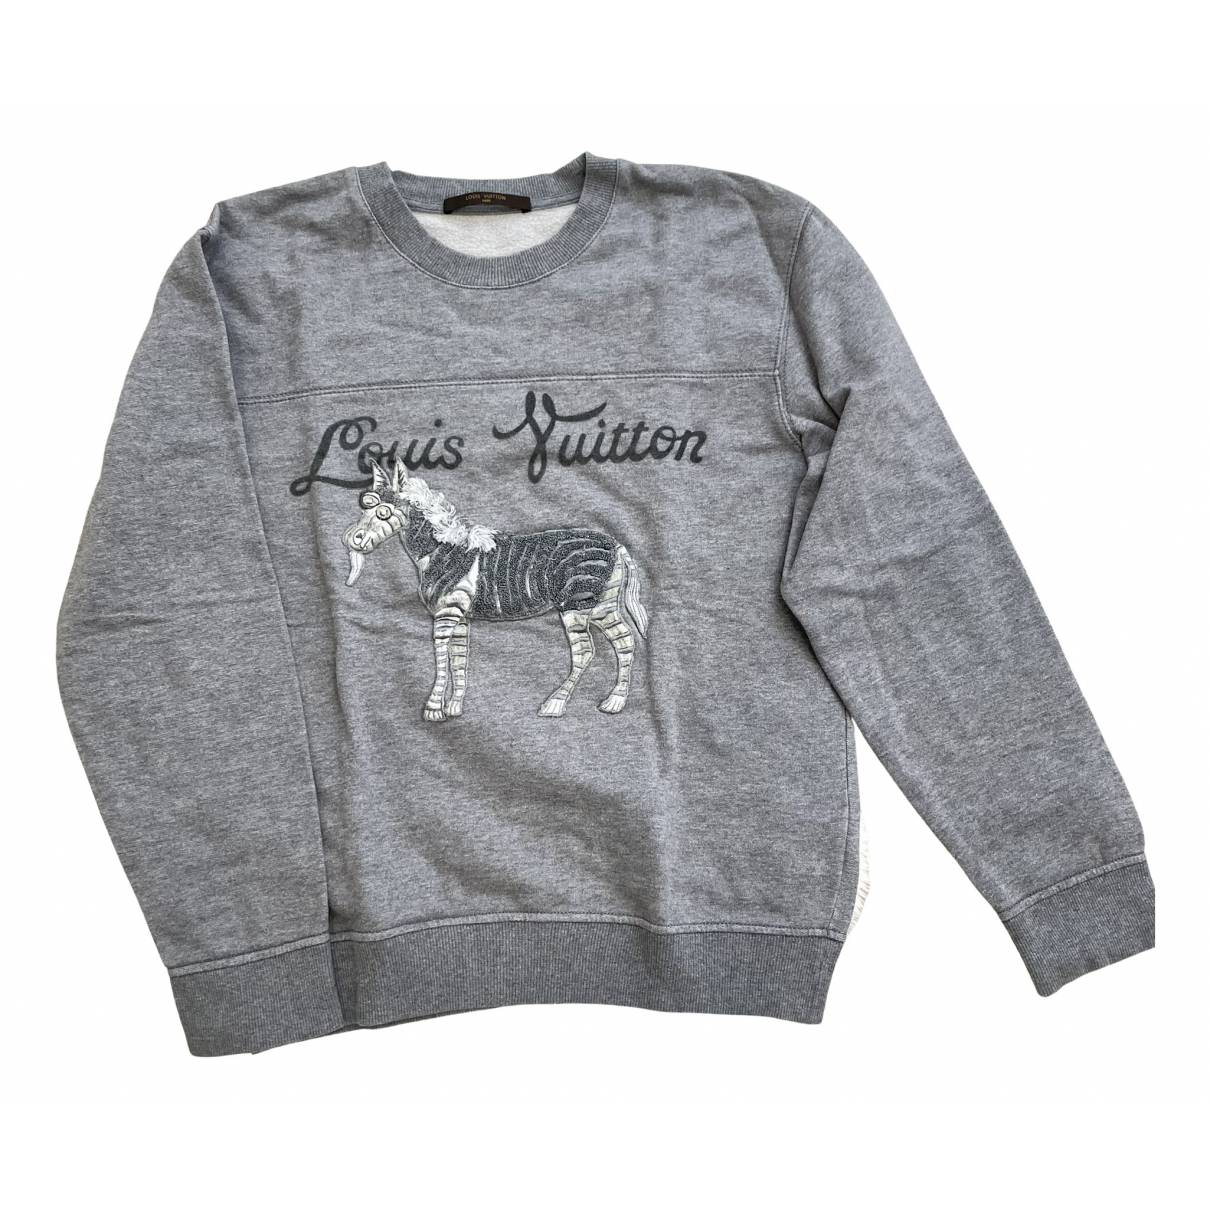 Sweatshirt Louis Vuitton Grey size S International in Cotton